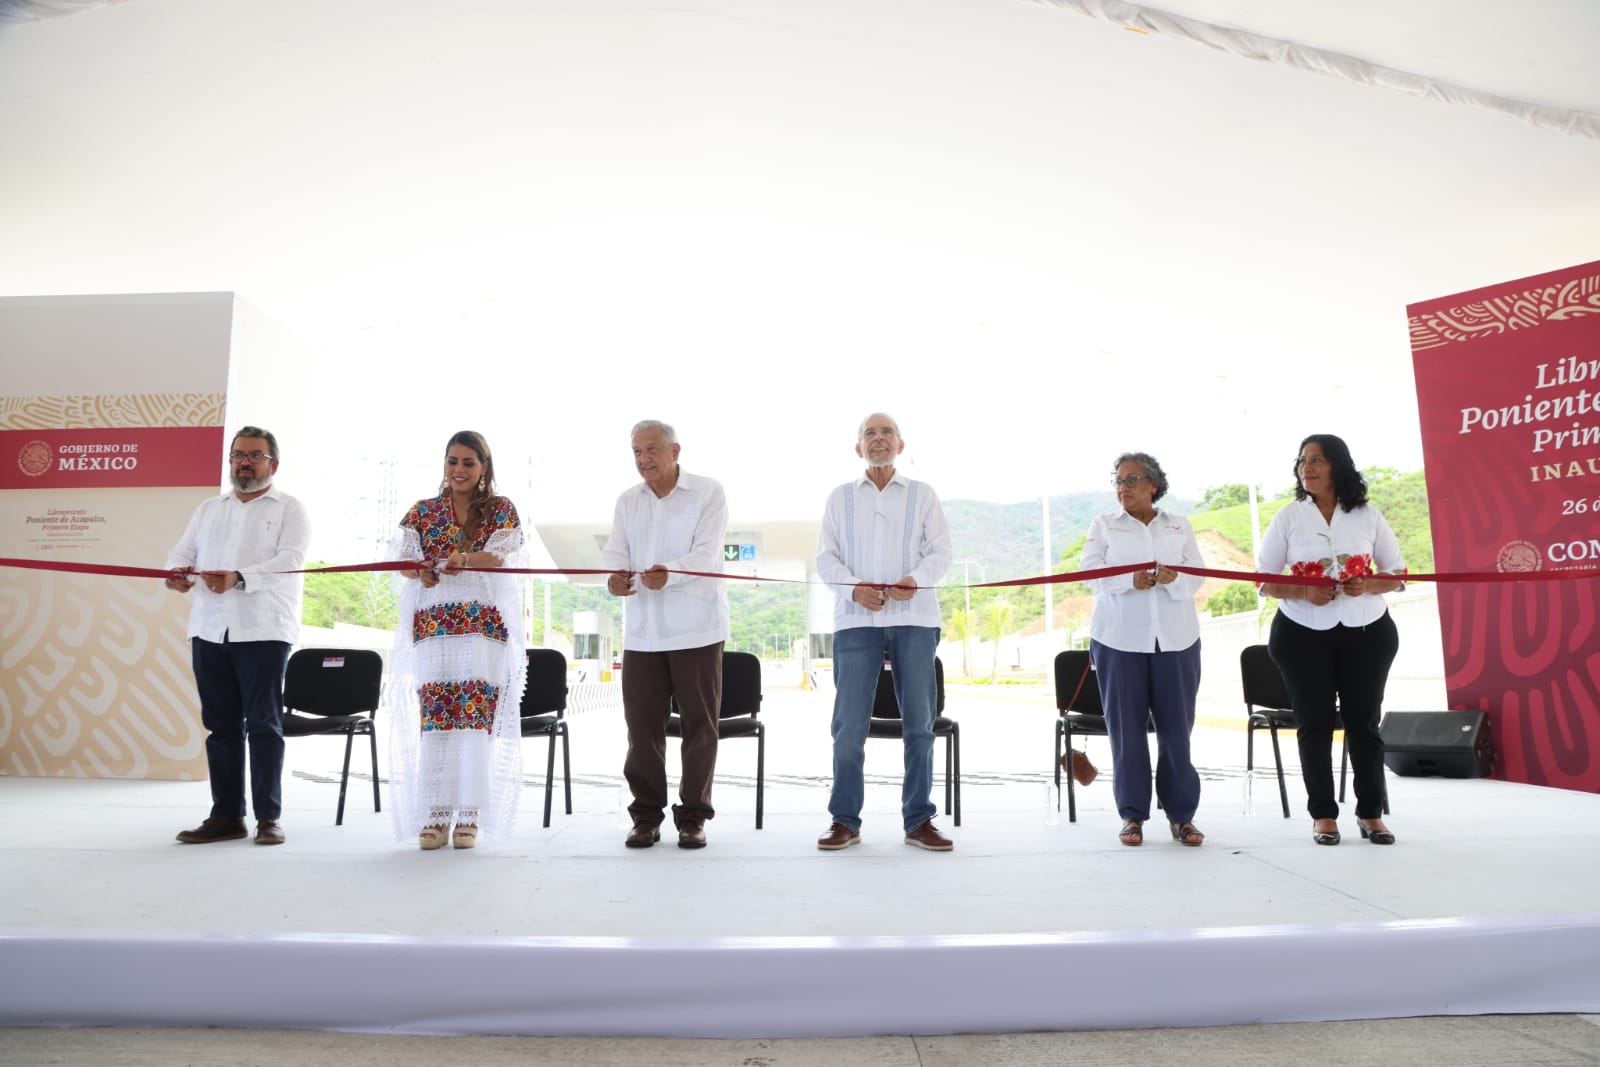 Inauguran el presidente Andrés Manuel López Obrador y la gobernadora Evelyn Salgado la primera etapa del libramiento poniente de Acapulco